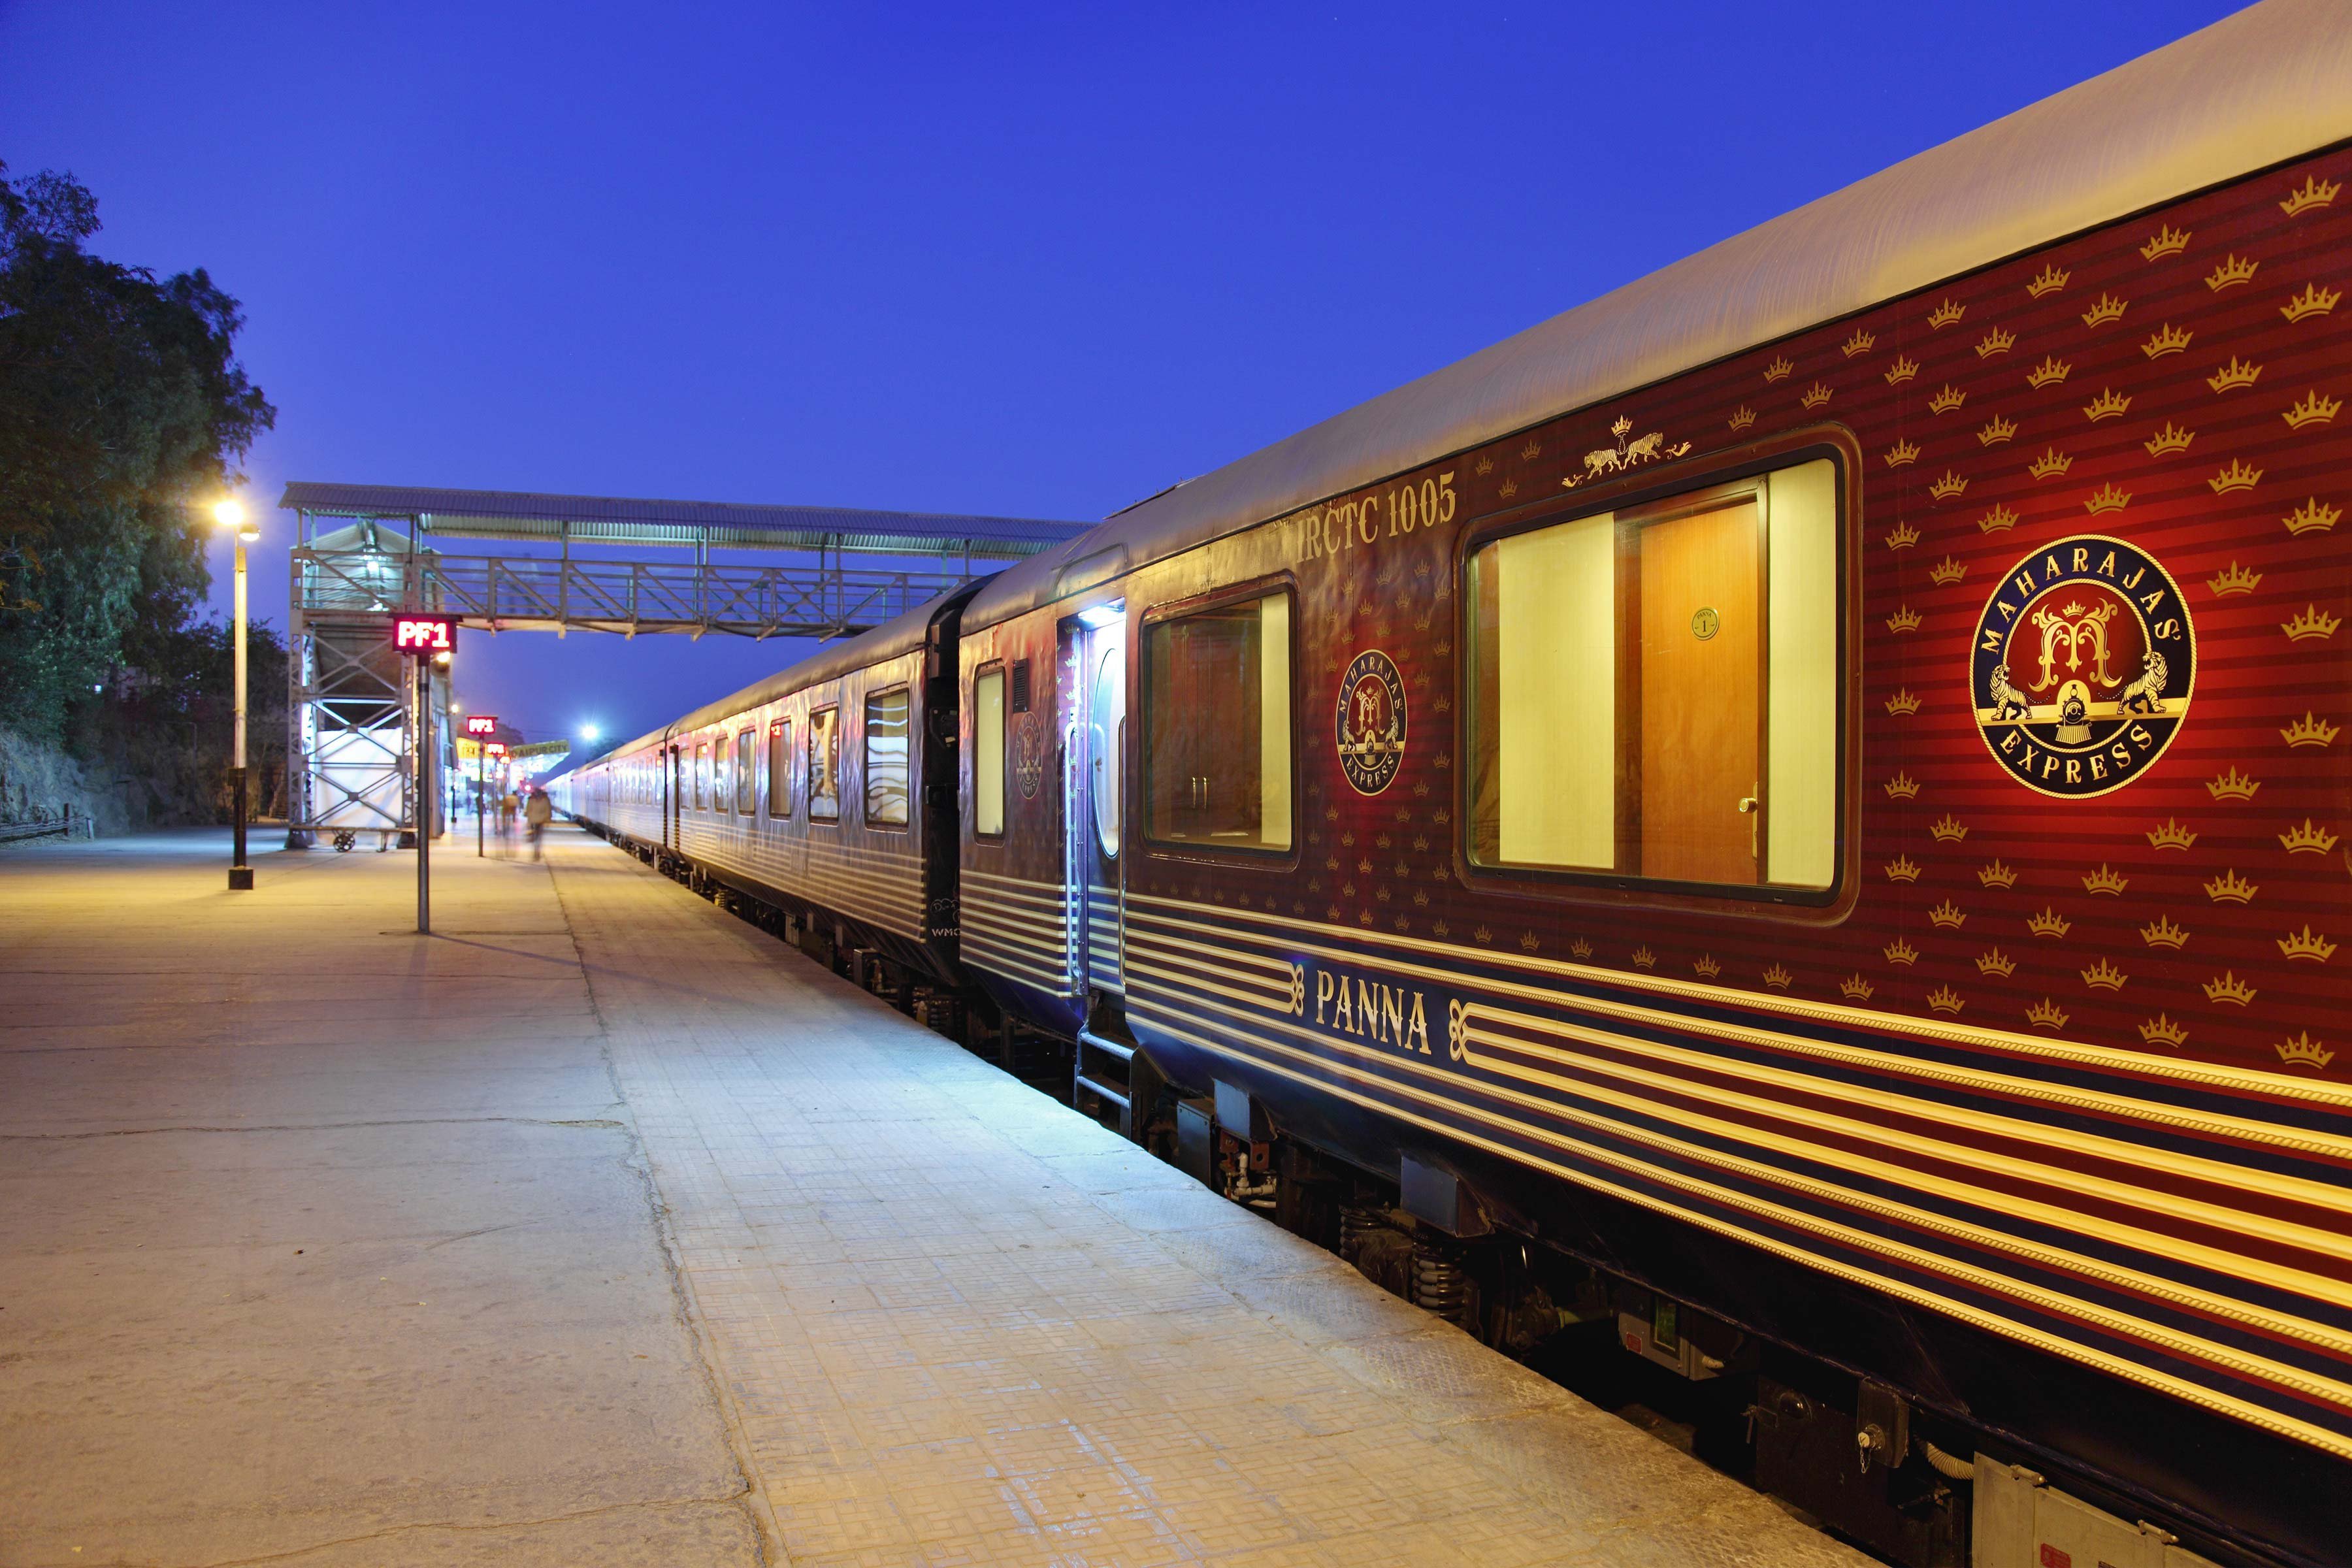 luxury rail tour of india